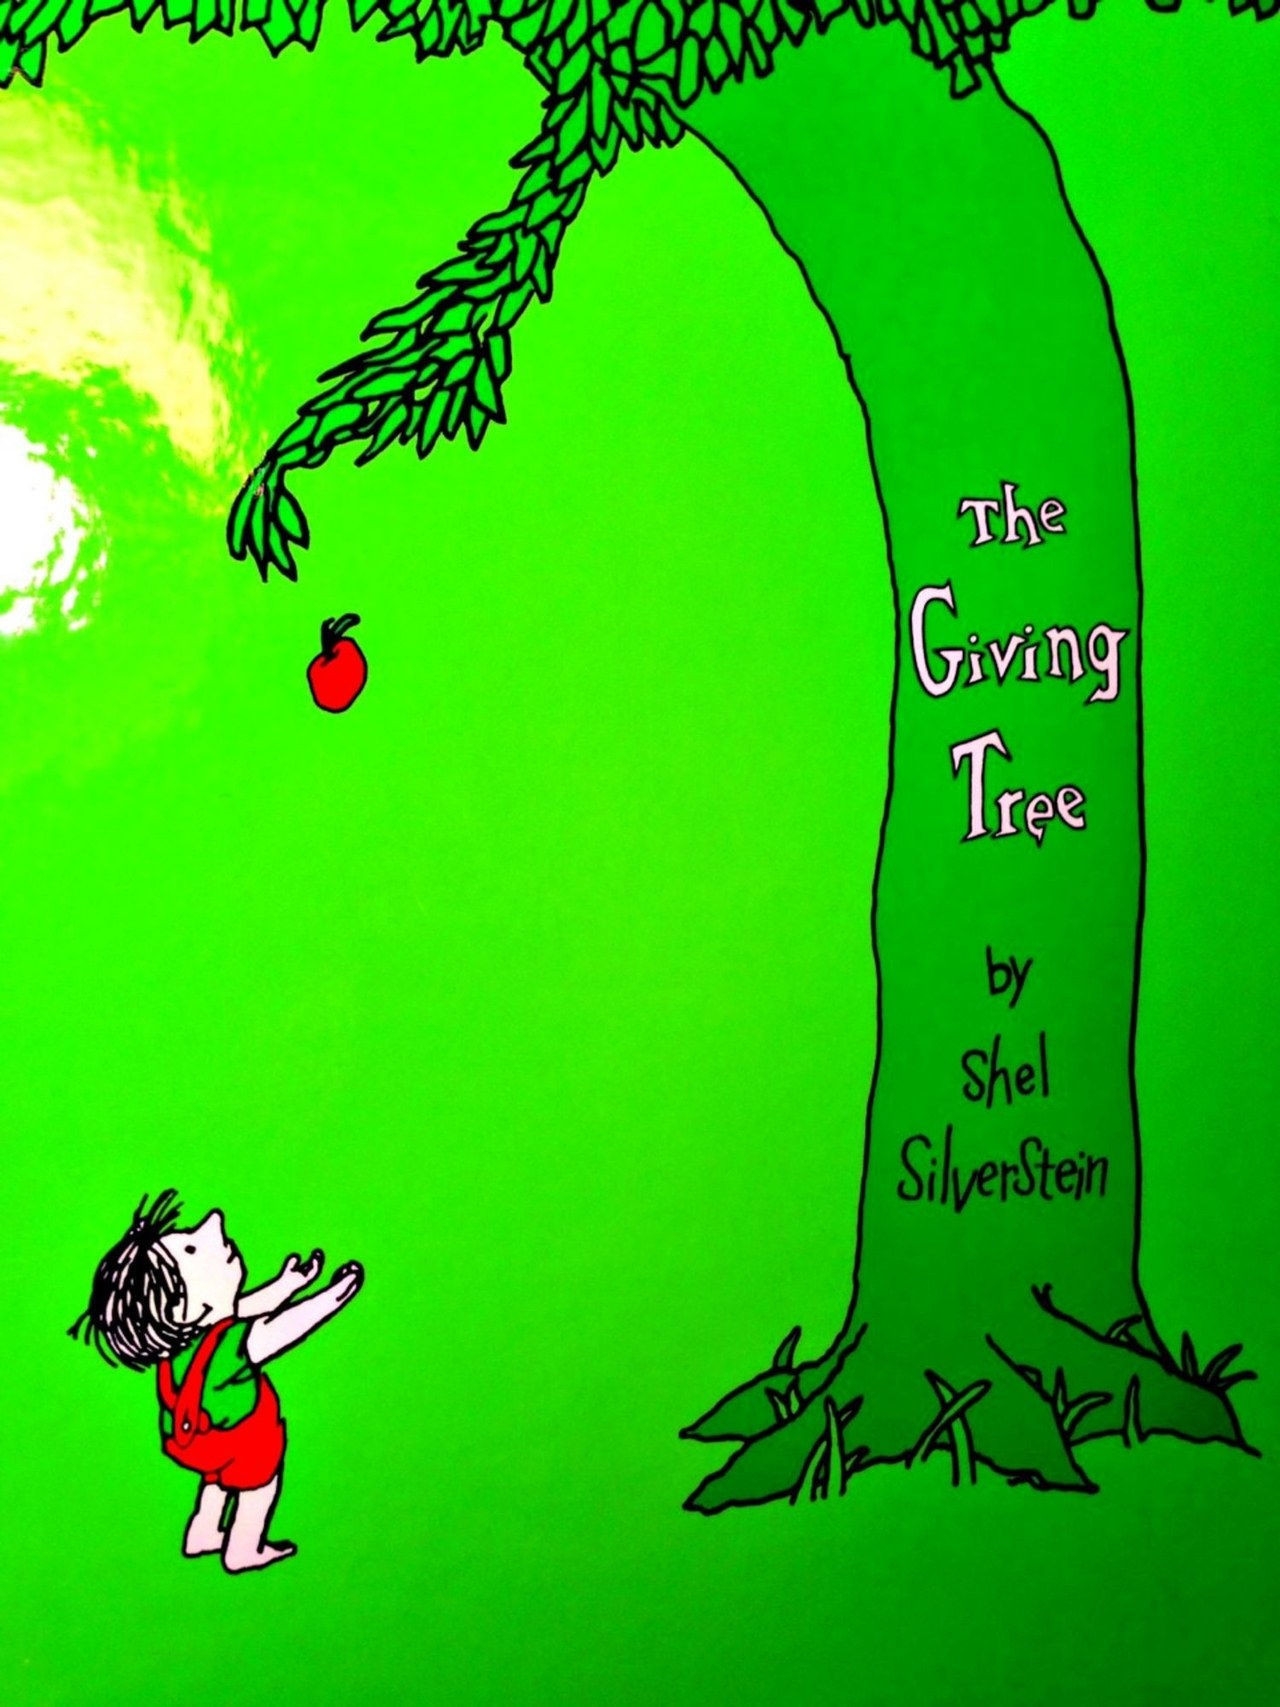 el giving tree book